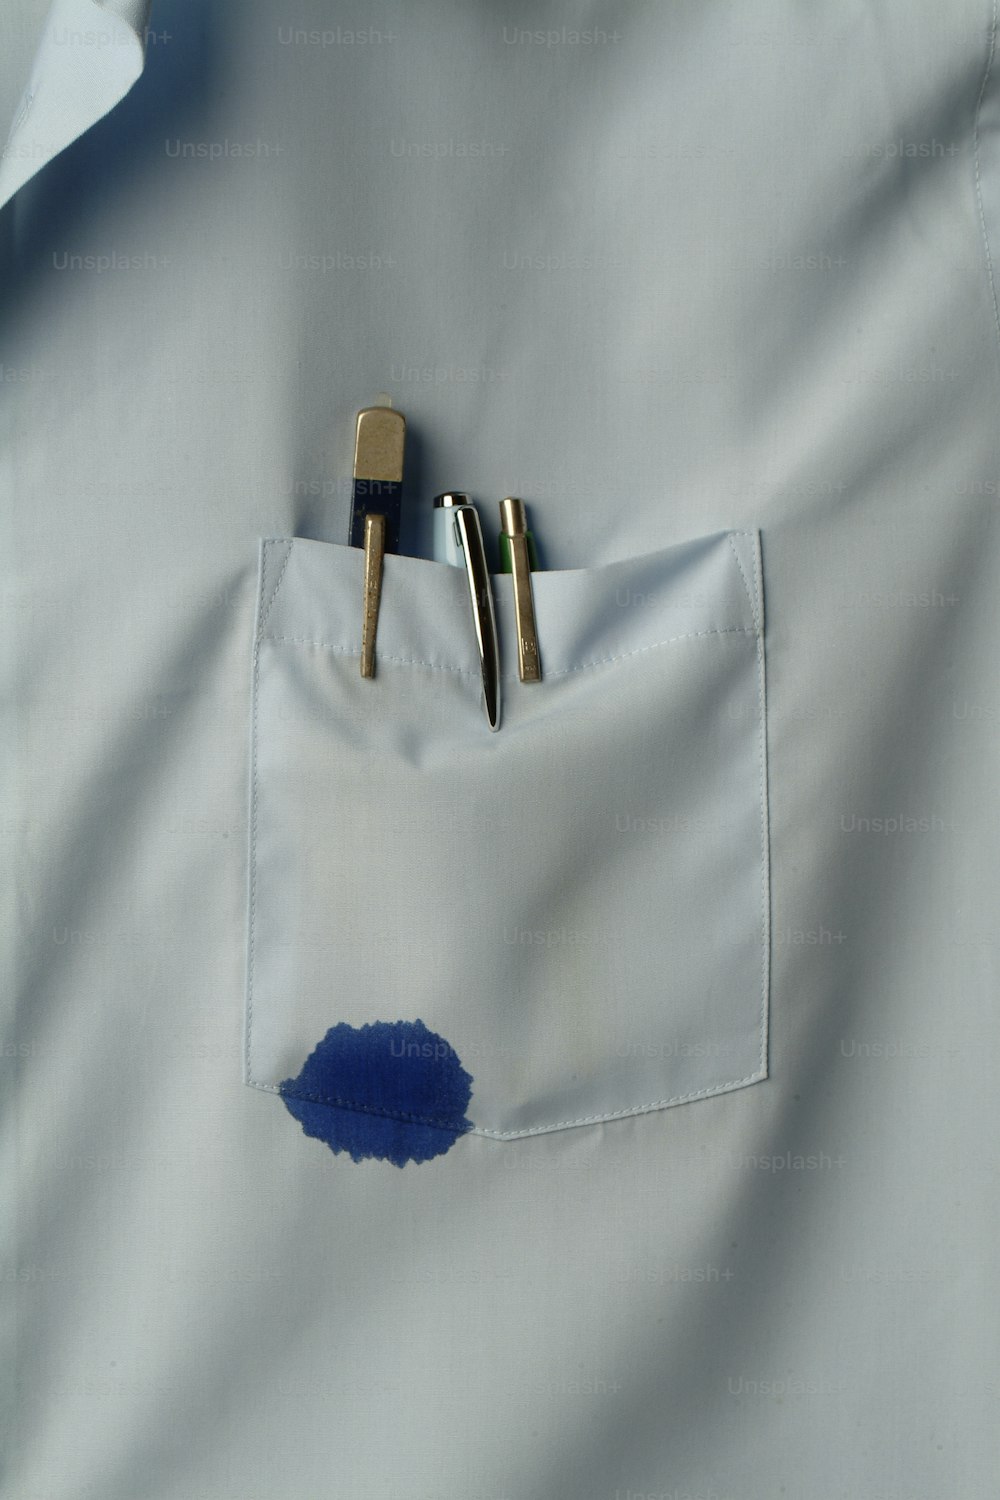 Vista ravvicinata di una tasca della camicia che contiene diverse penne, una delle quali perde inchiostro blu, California, anni '70. (Foto di Tom Kelley/Getty Images)